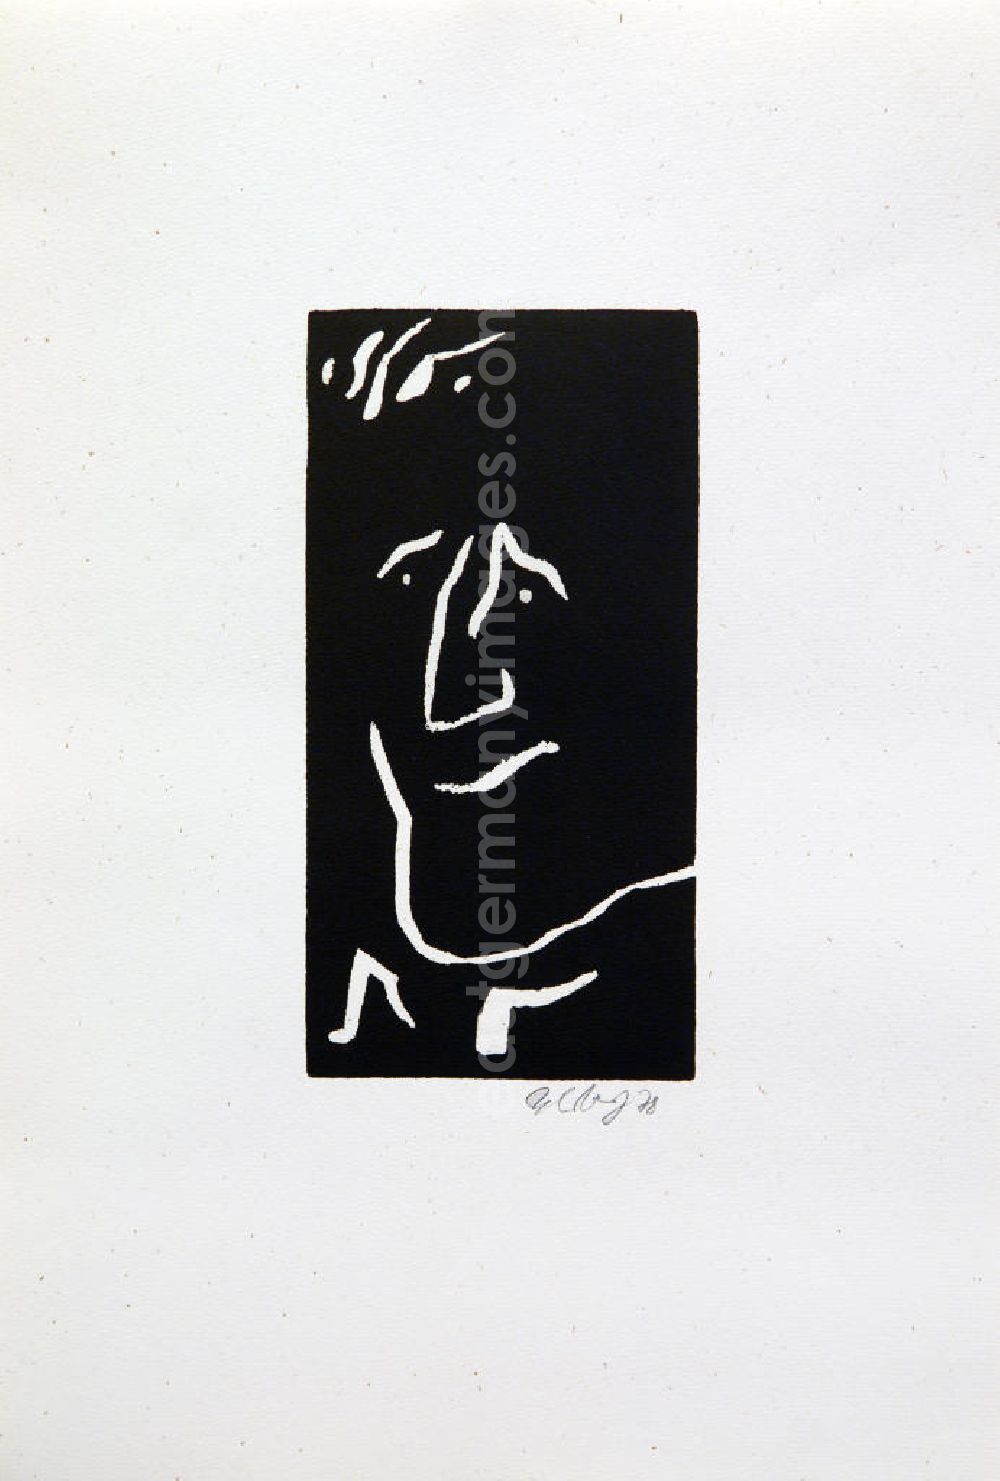 GDR photo archive: Berlin - Grafik von Herbert Sandberg über Bertolt Brecht (*10.02.1898 †14.08.1956) aus dem Jahr 1978 als Erinnerung anlässlich seines 80. Geburtstages (Brecht nah, links) Holzschnitt auf handgeschöpftem Bütten 20,5 x1